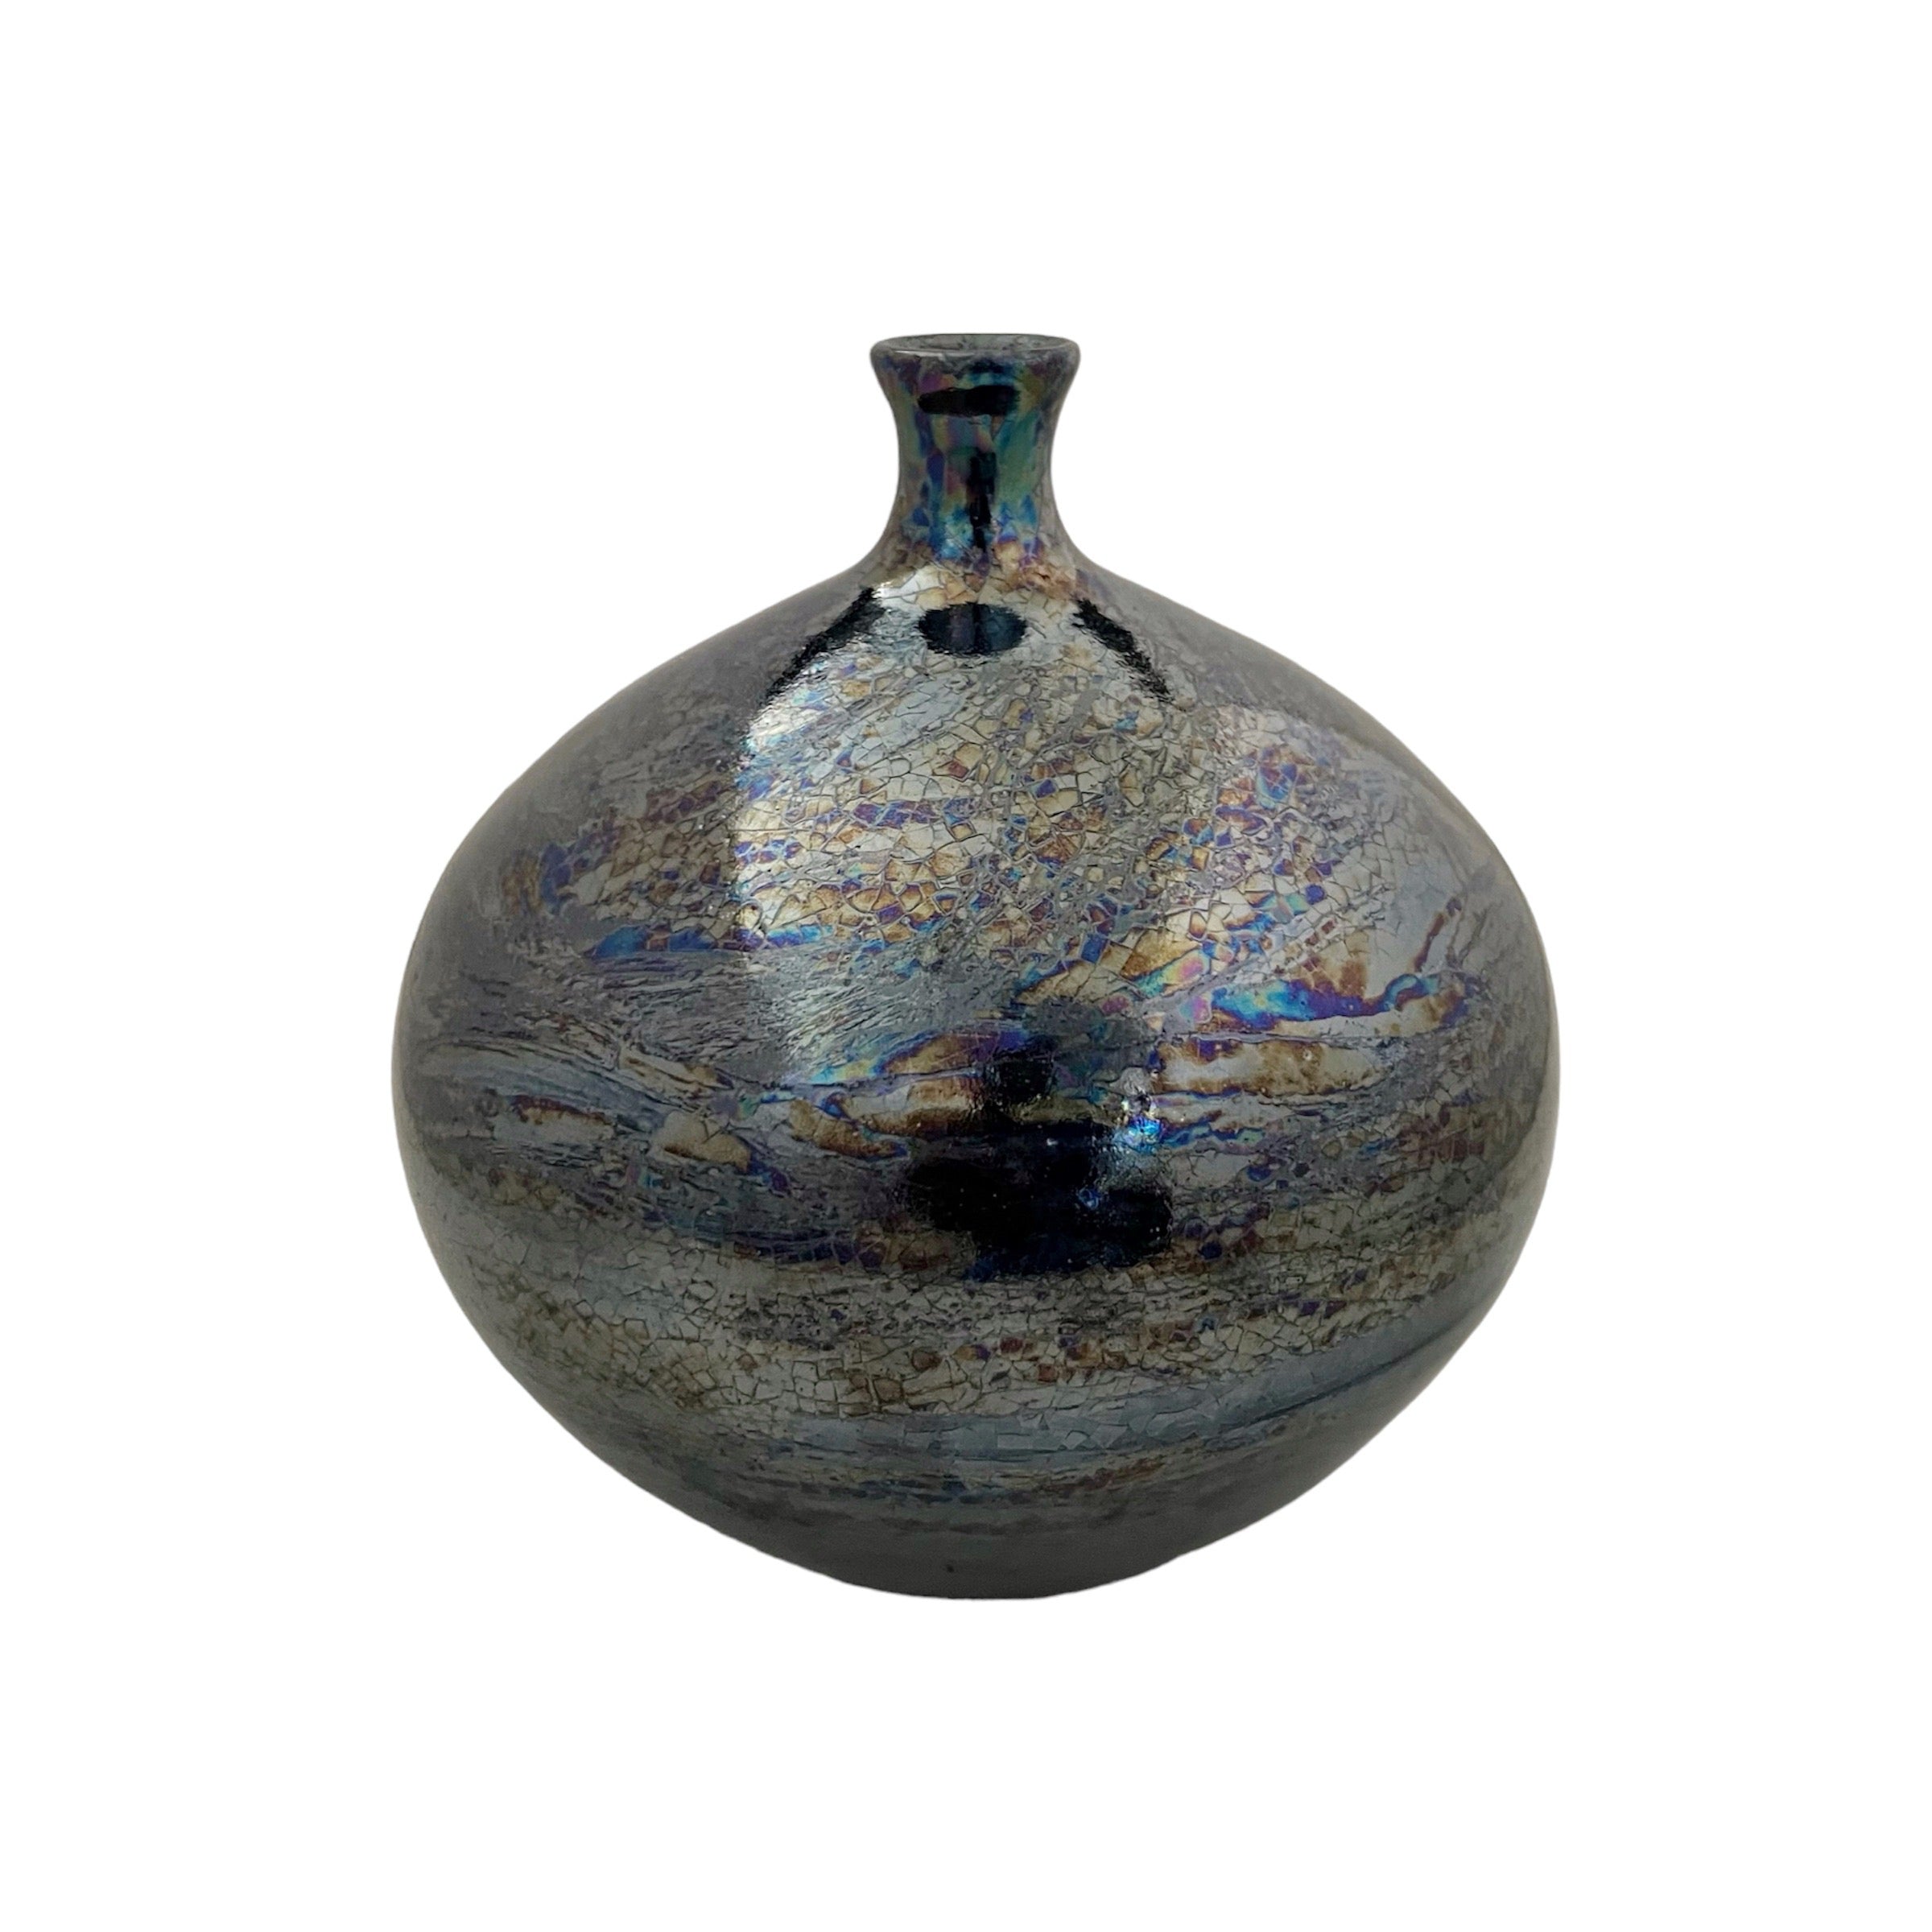 blue ceramic vase